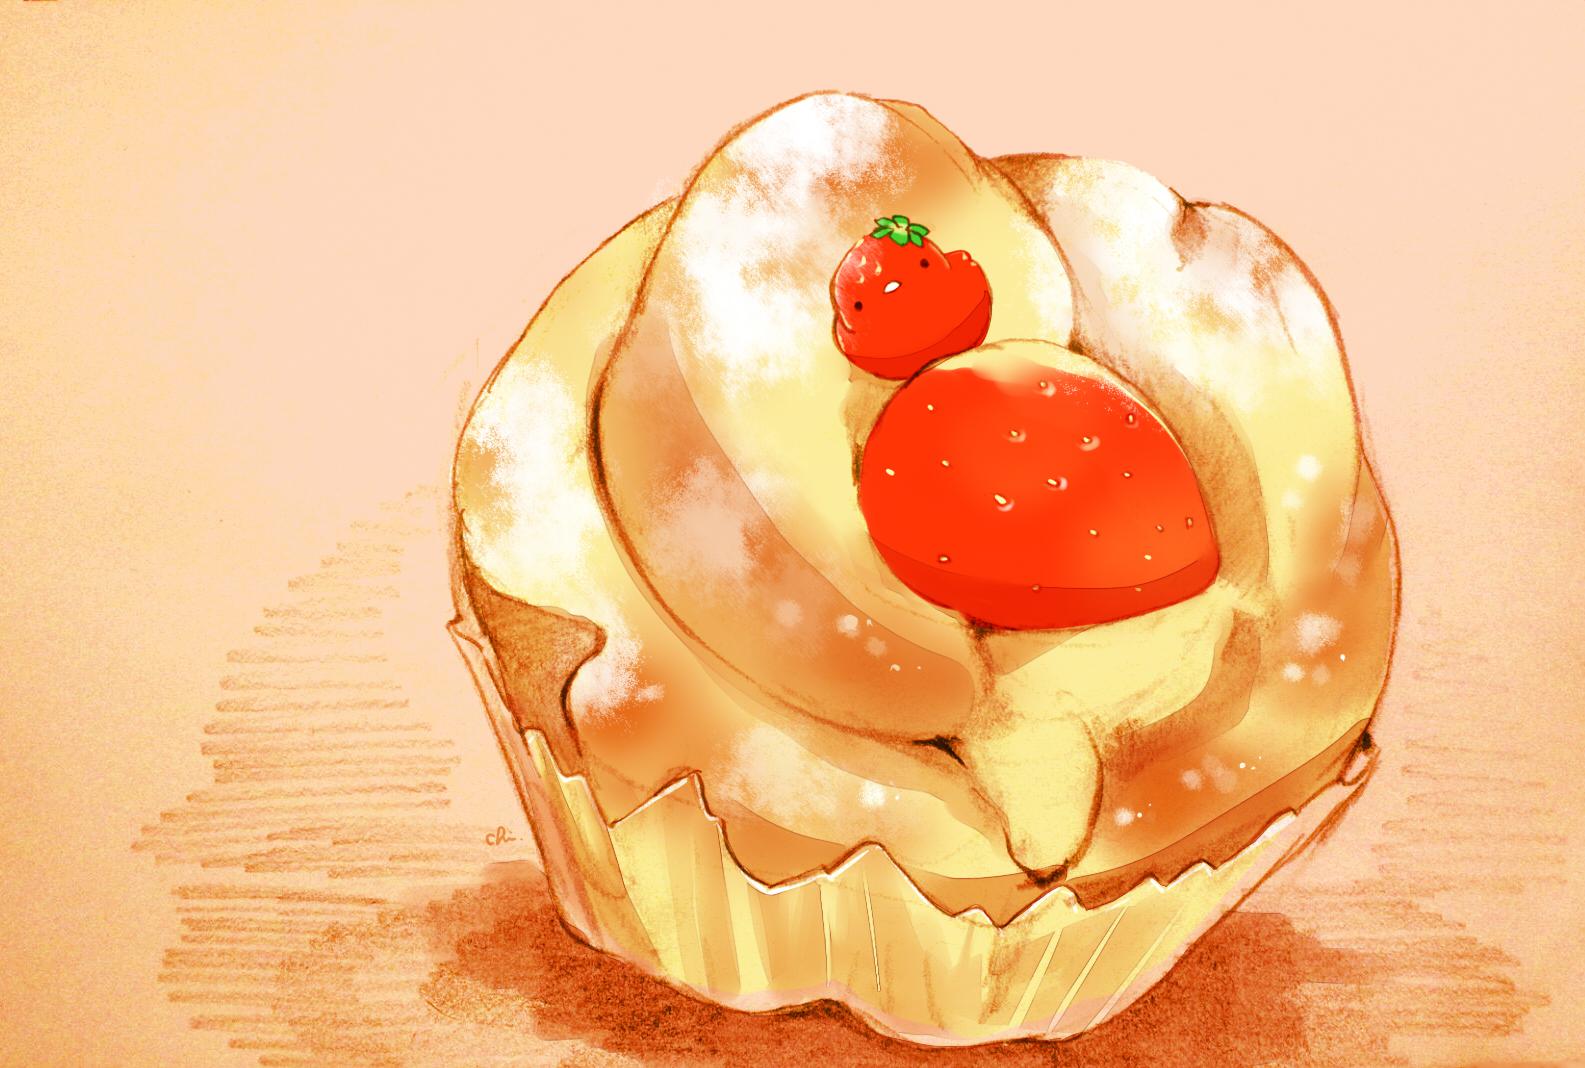 草莓松软蛋糕-原创すいーとり